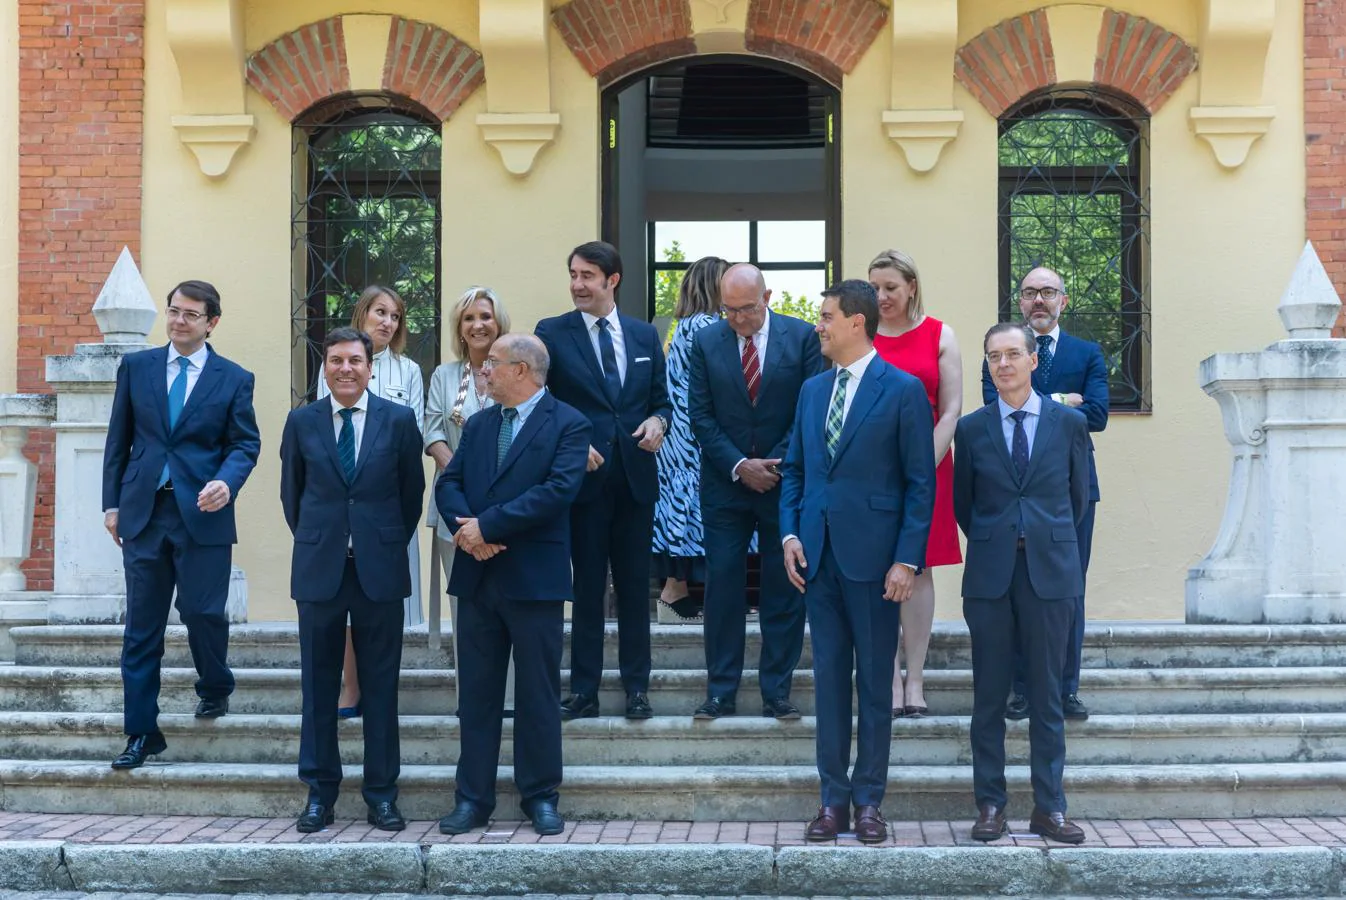 Familiares, amigos y exconsejeros acompañan al nuevo Ejecutivo de Castilla y León en su toma de posesión